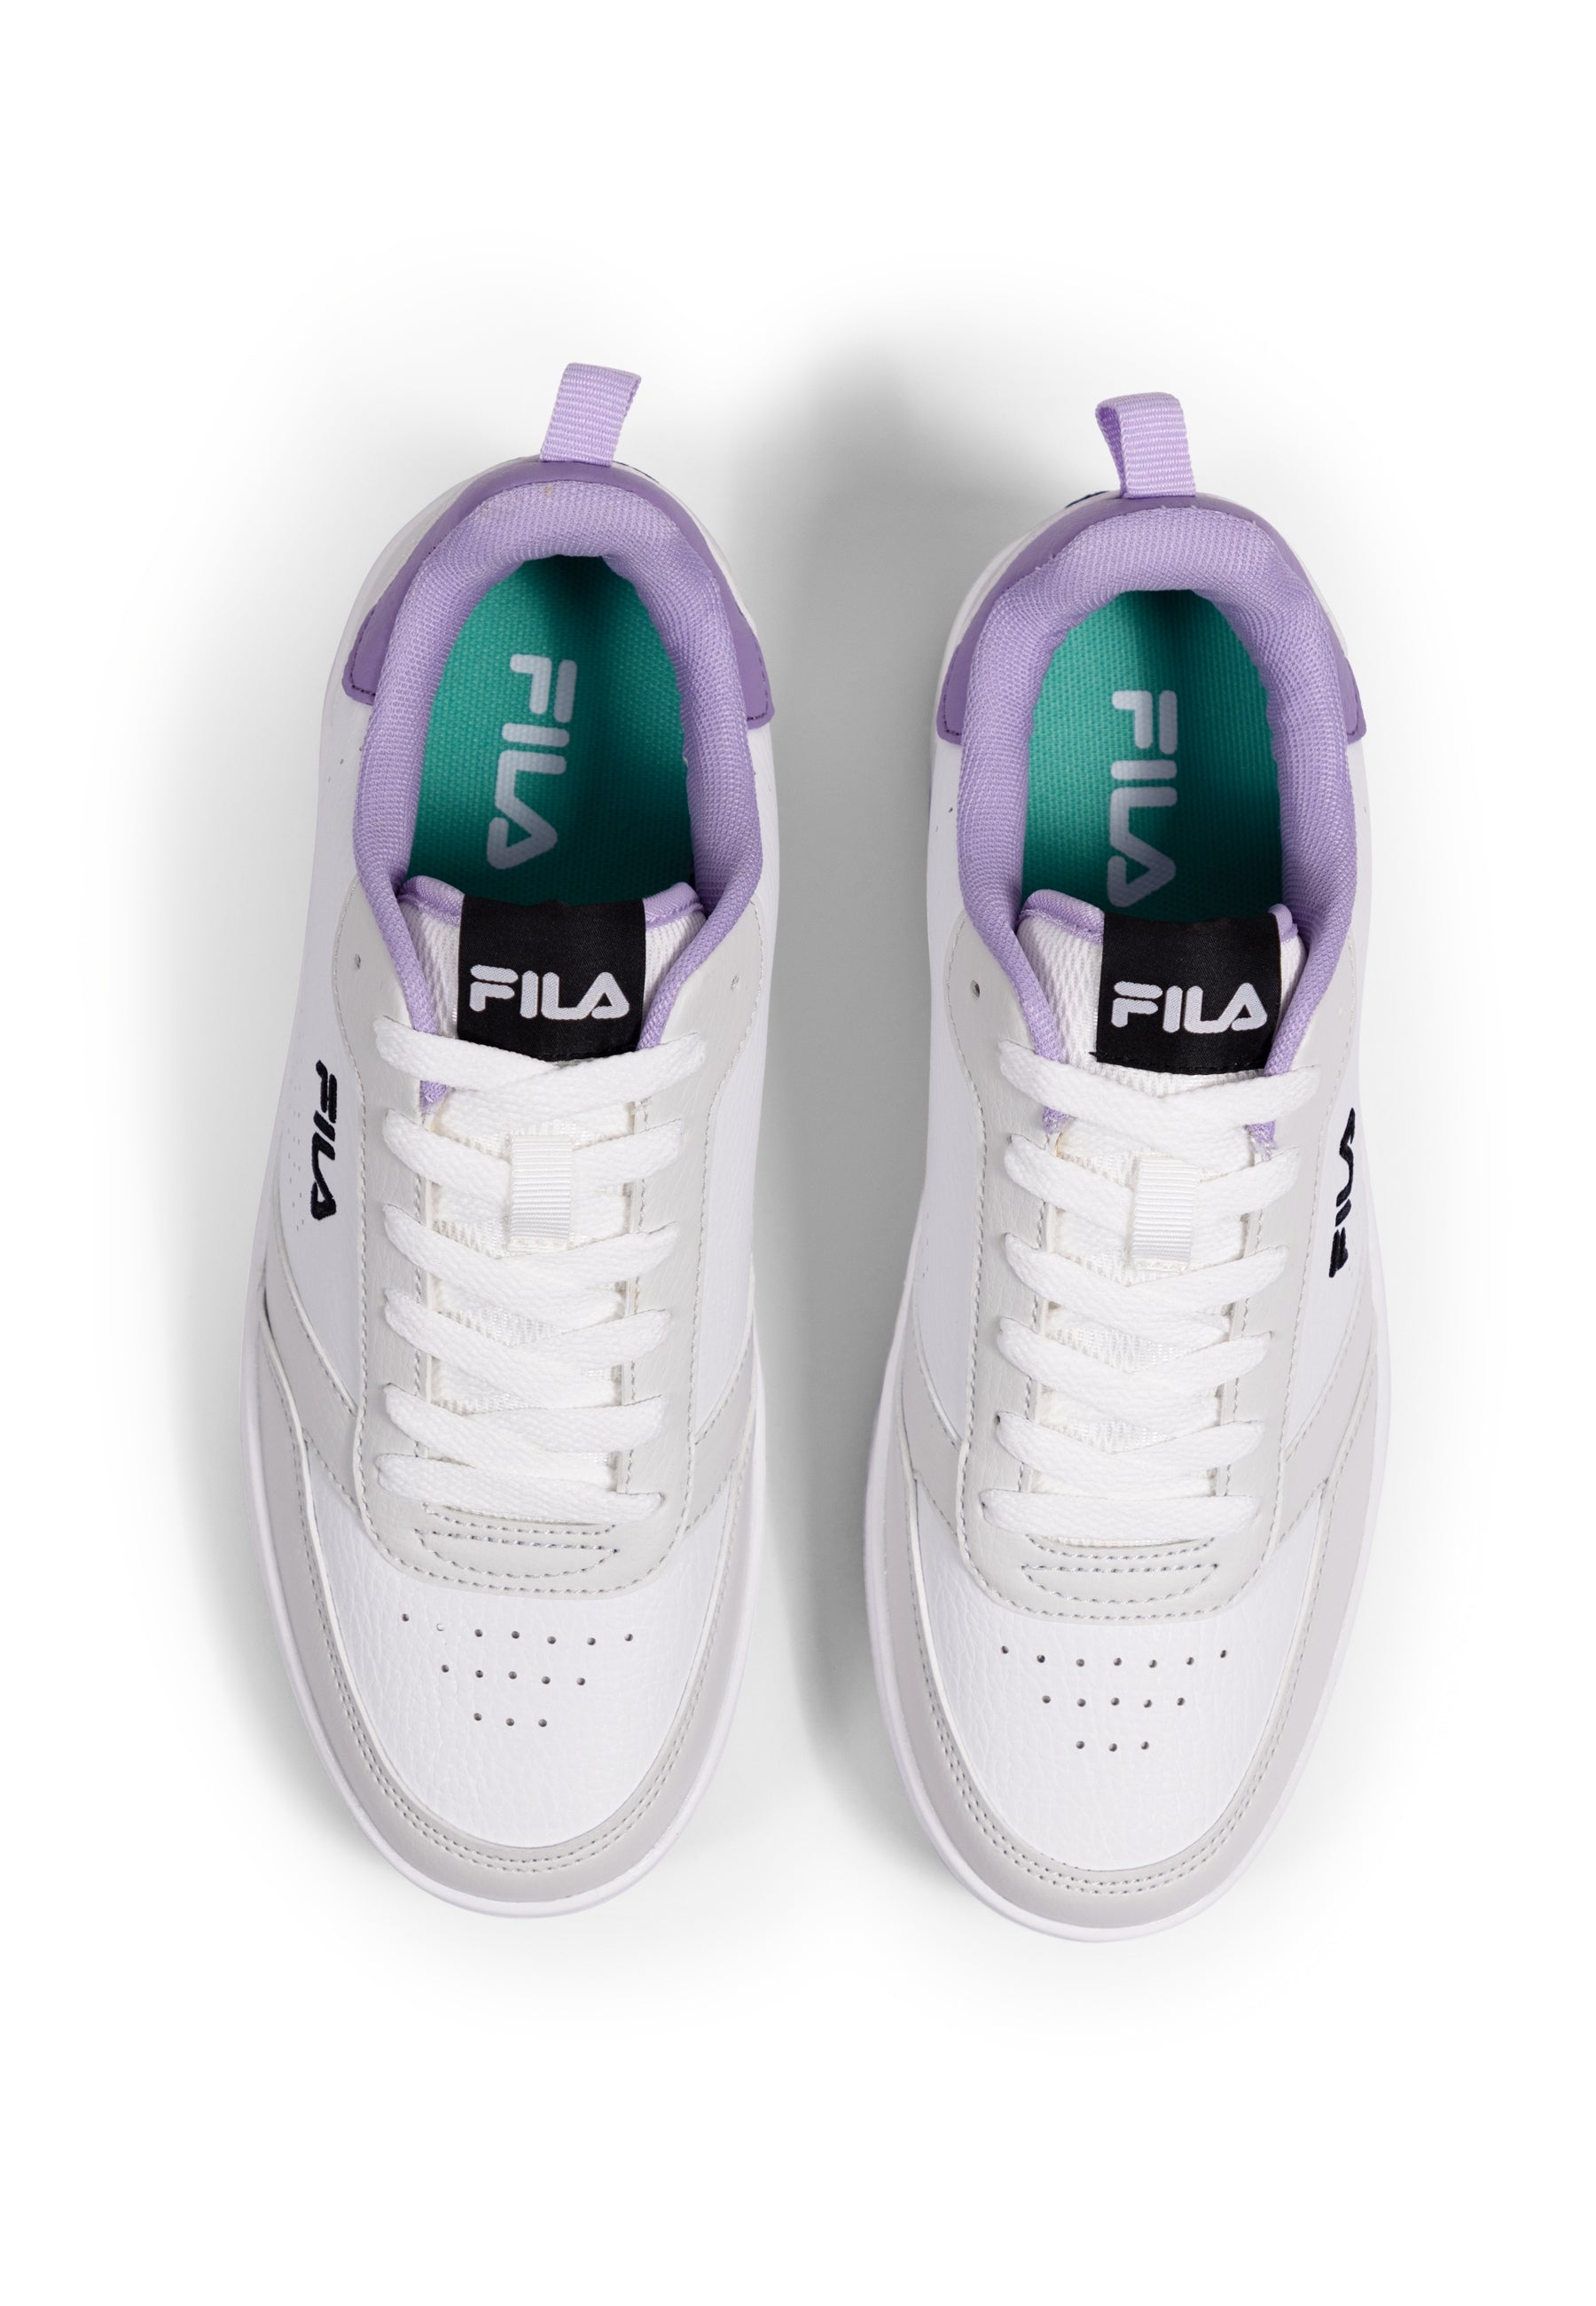 Rega Wmn in White-Viola Sneakers Fila   